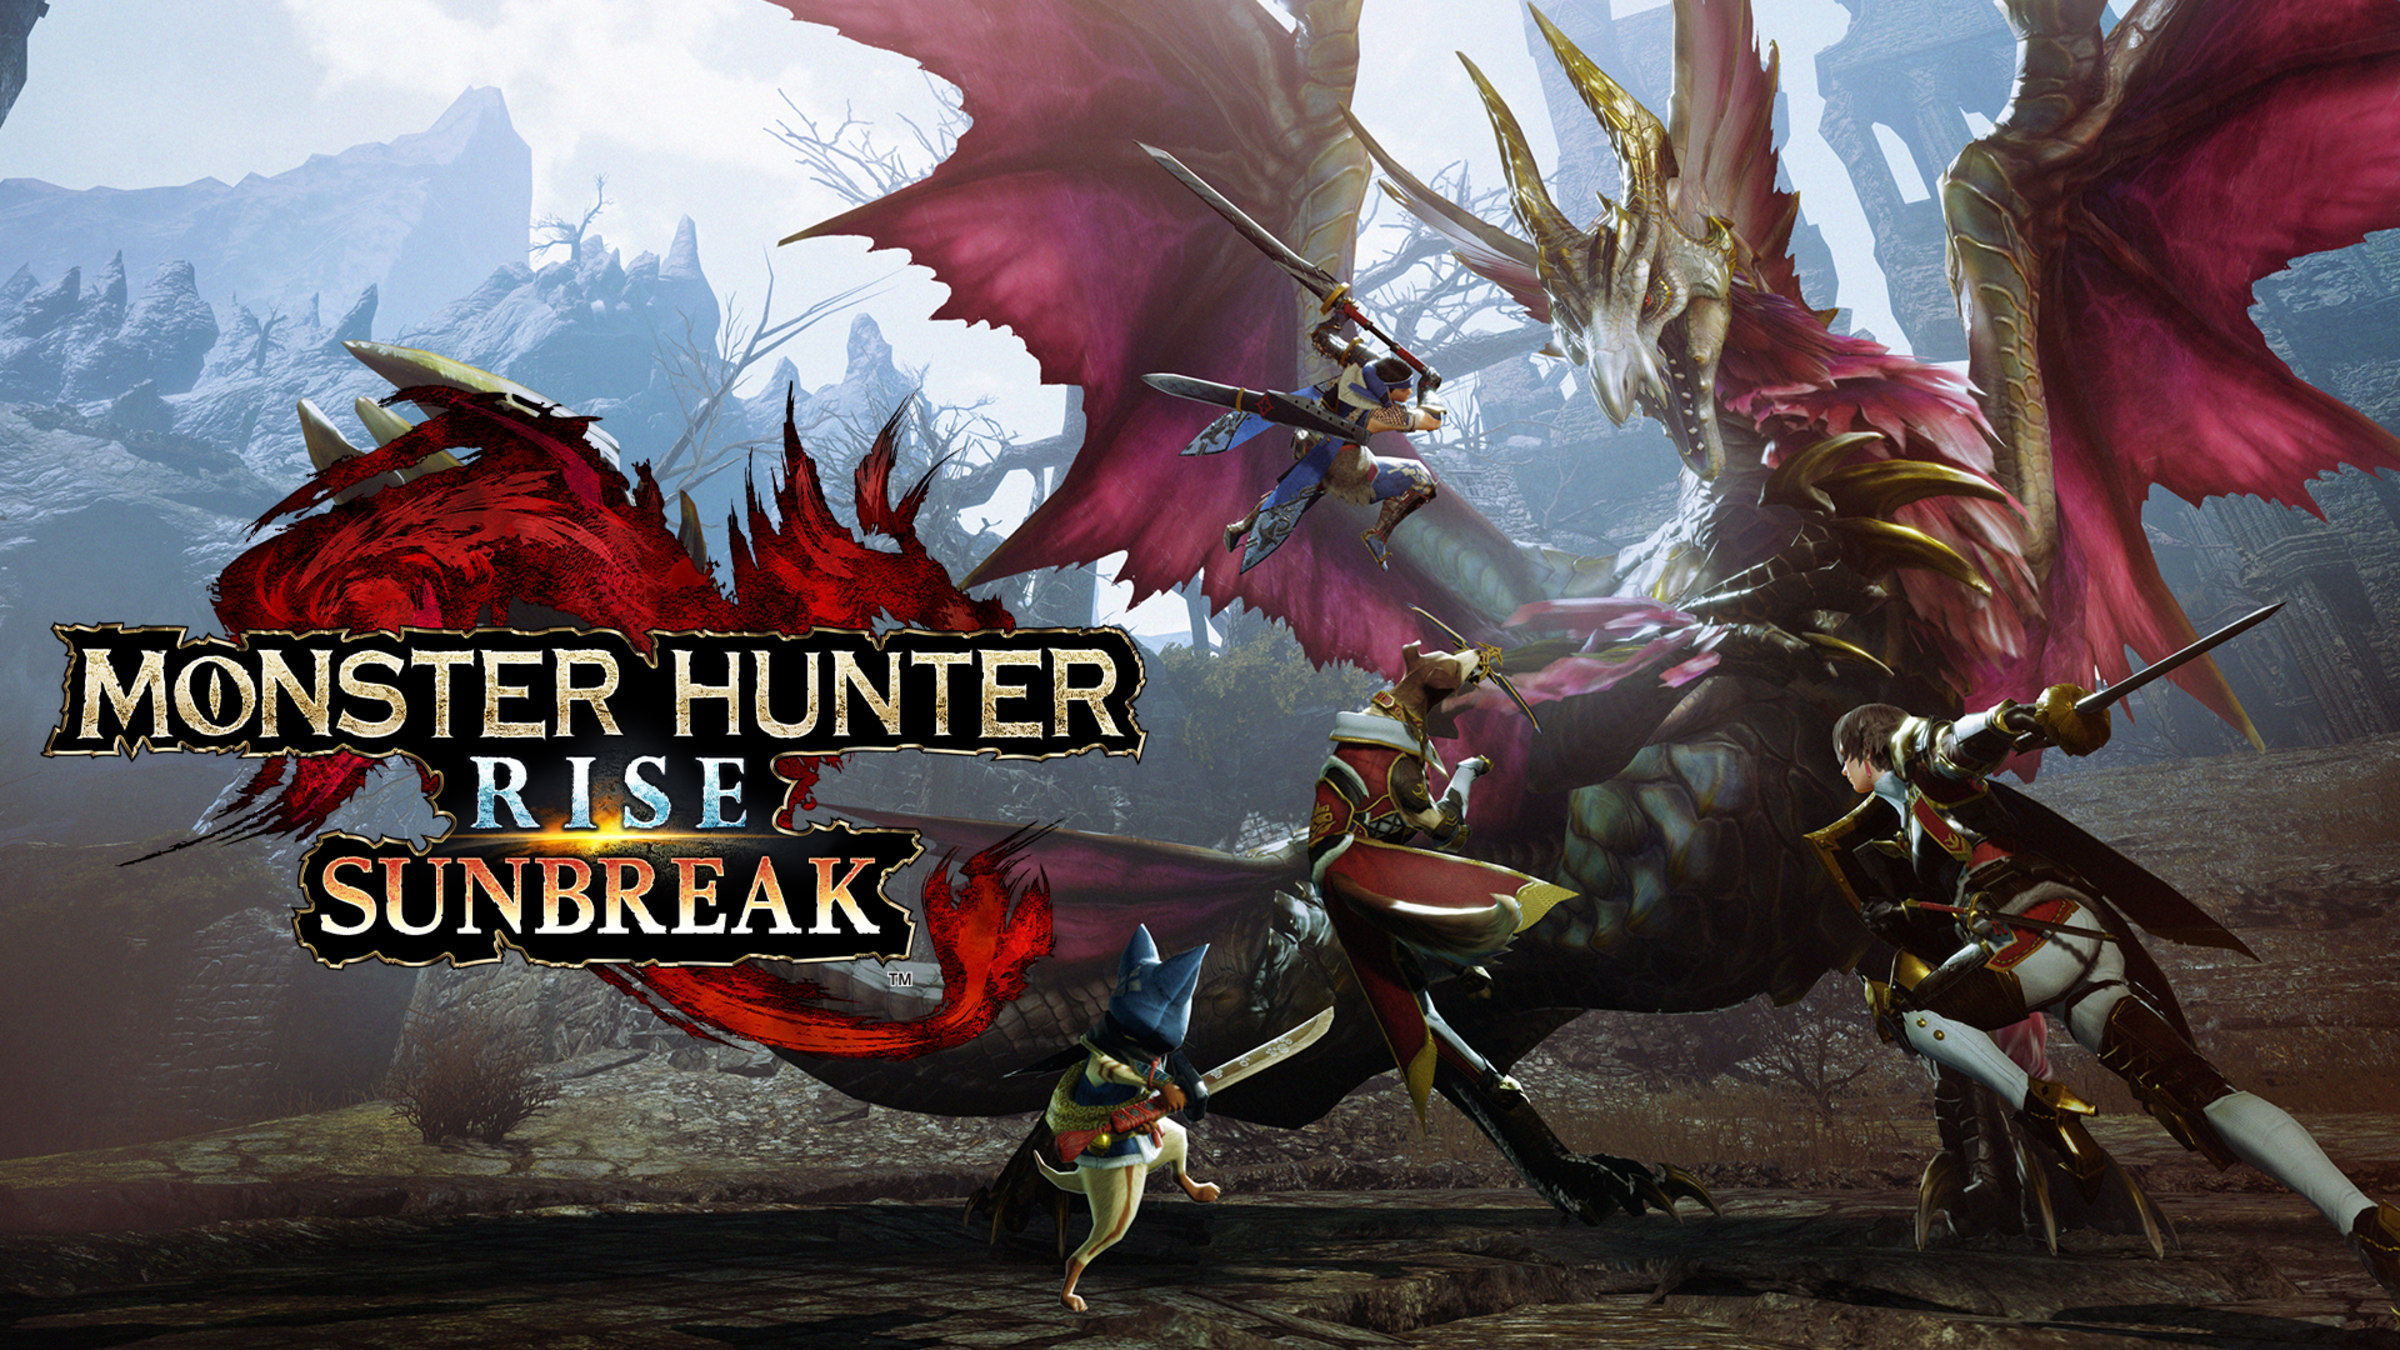 Monster Hunter Rise + Sunbreak for Nintendo Switch - Nintendo Official Site